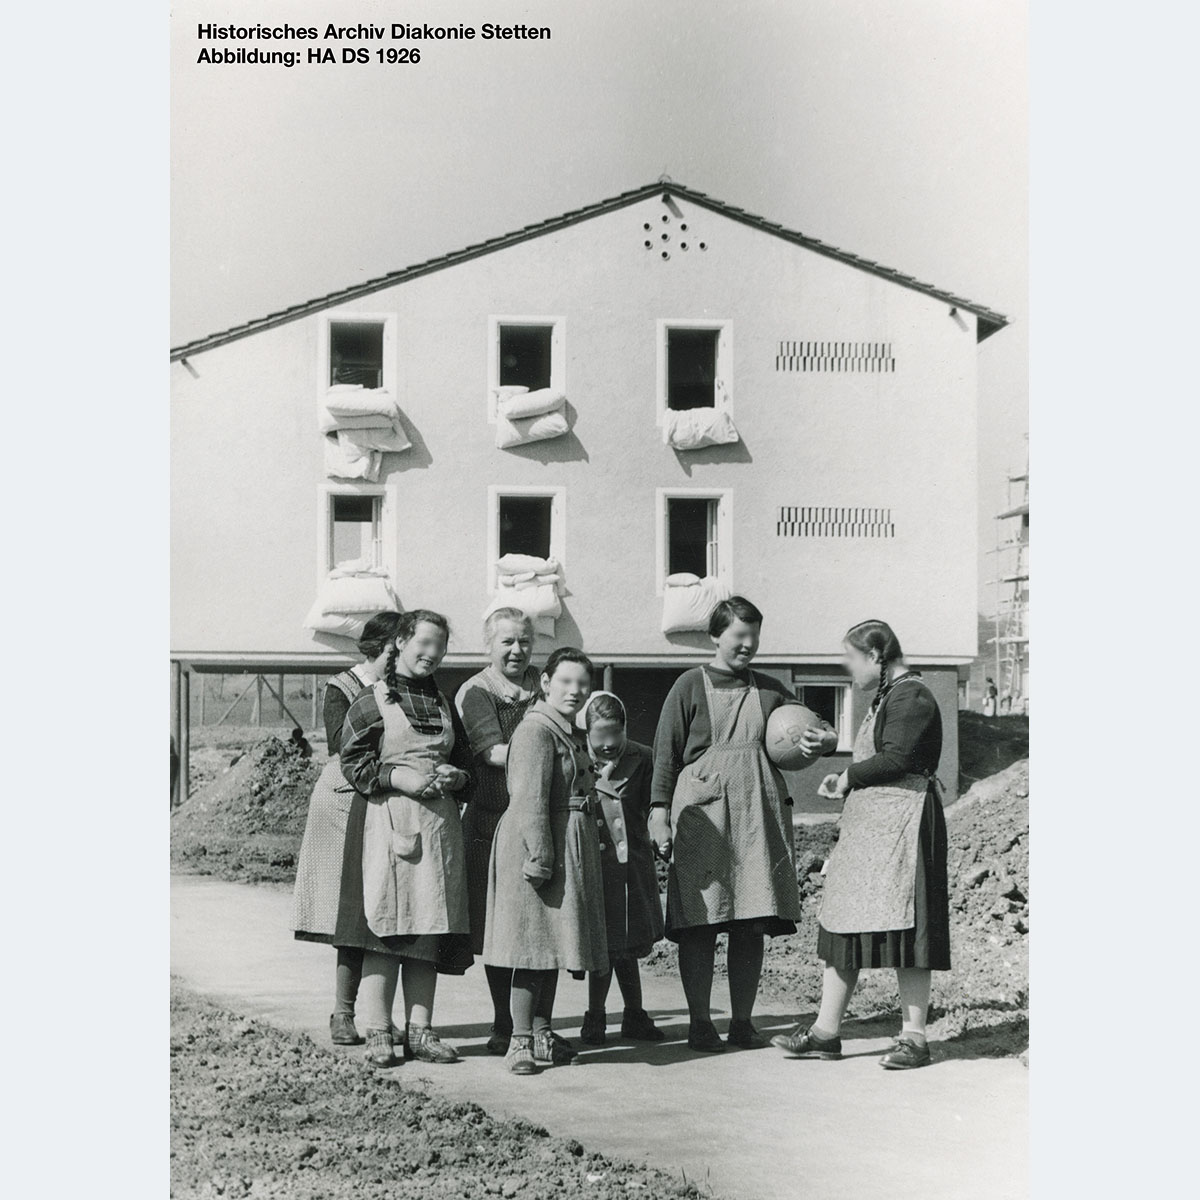 Neubau auf der Hangweide [Quelle: Historisches Archiv Diakonie Stetten 1926]. Aus rechtlichen Gründen wurden die Gesichtszüge der abgebildeten Personen anonymisiert. Zum Vergrößern bitte klicken.